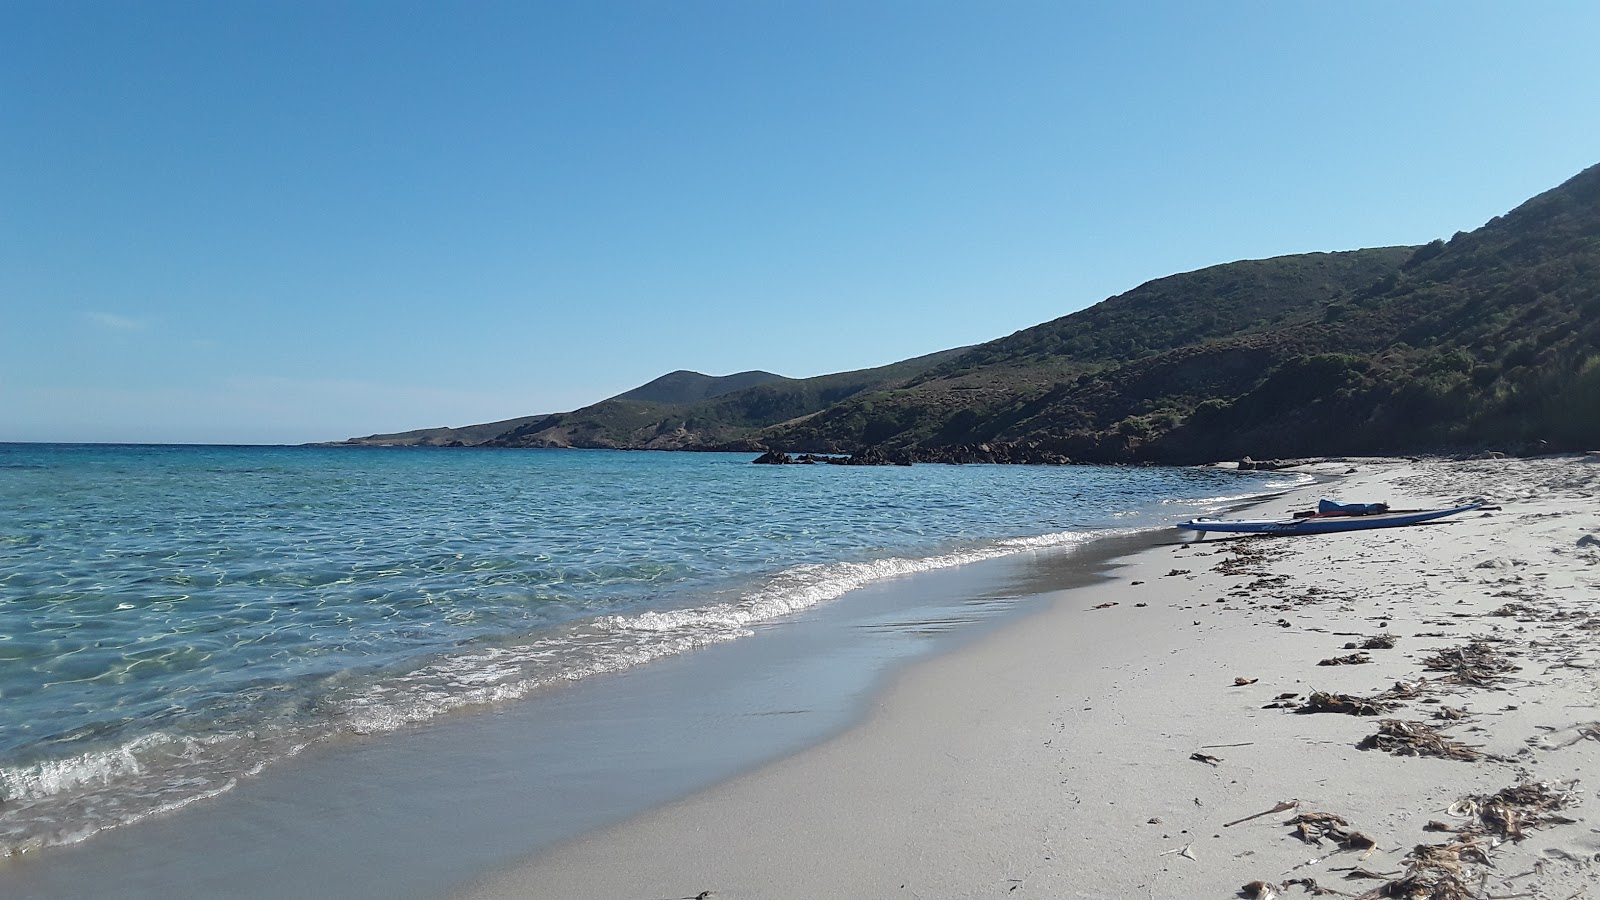 Foto von Acciola beach mit viele kleine buchten